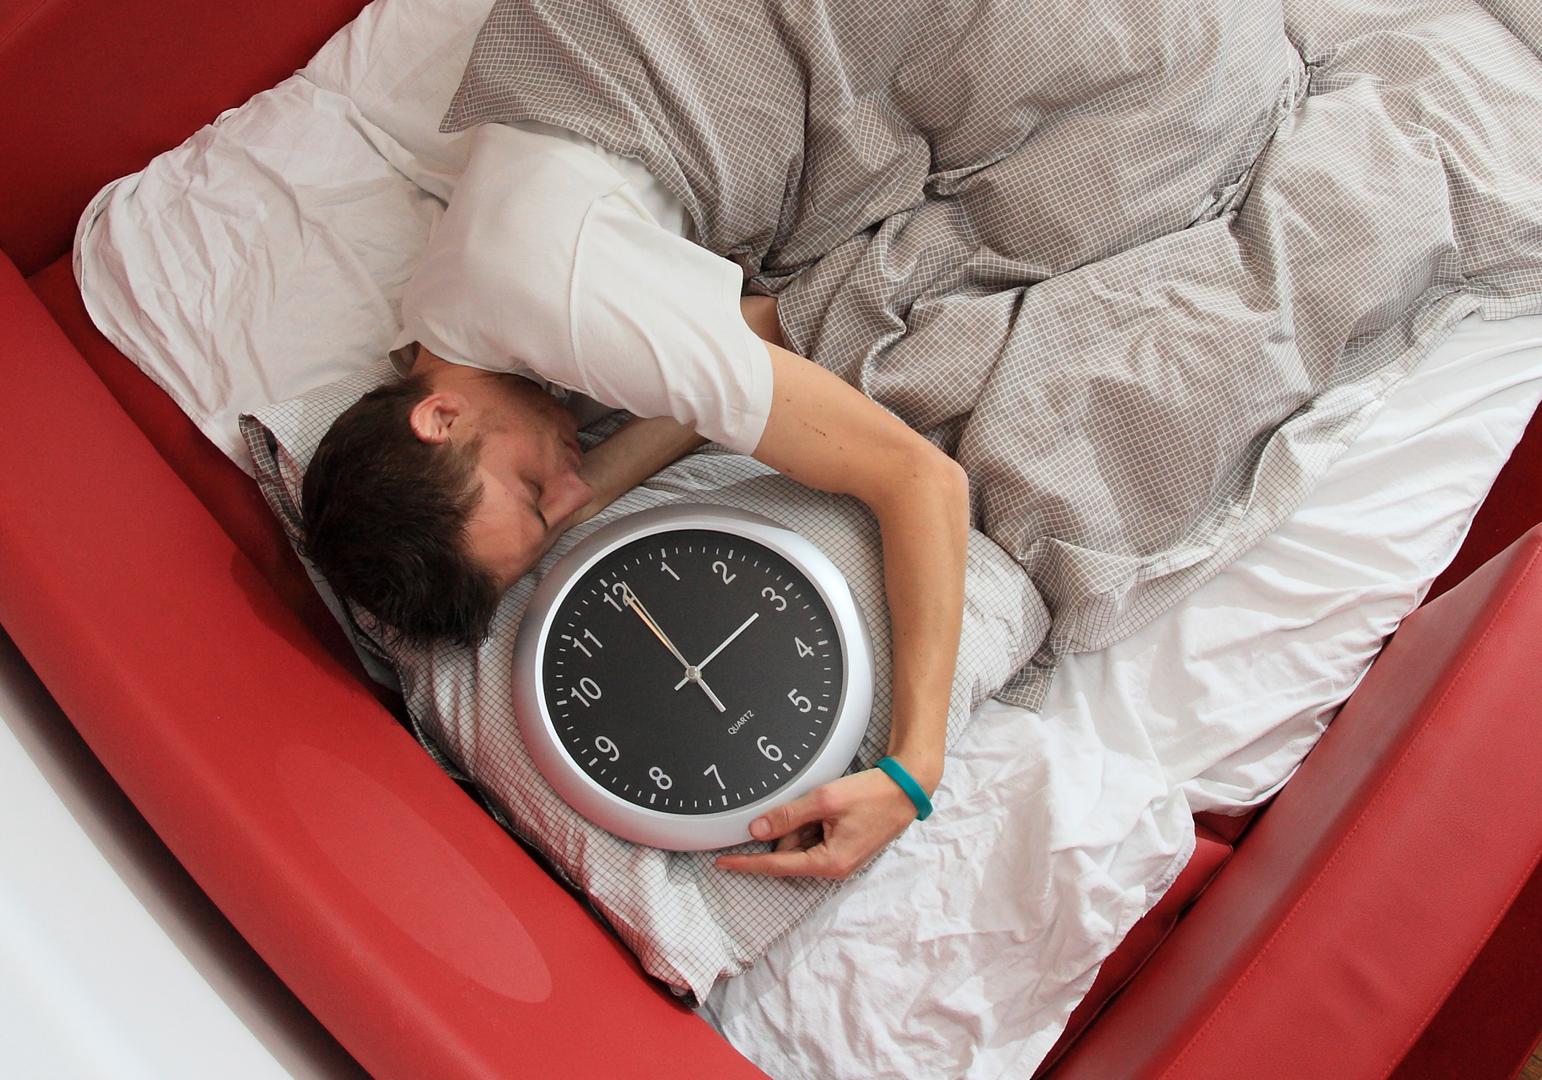 7. Apneja u snu - osoba tijekom sna prestane disati 

